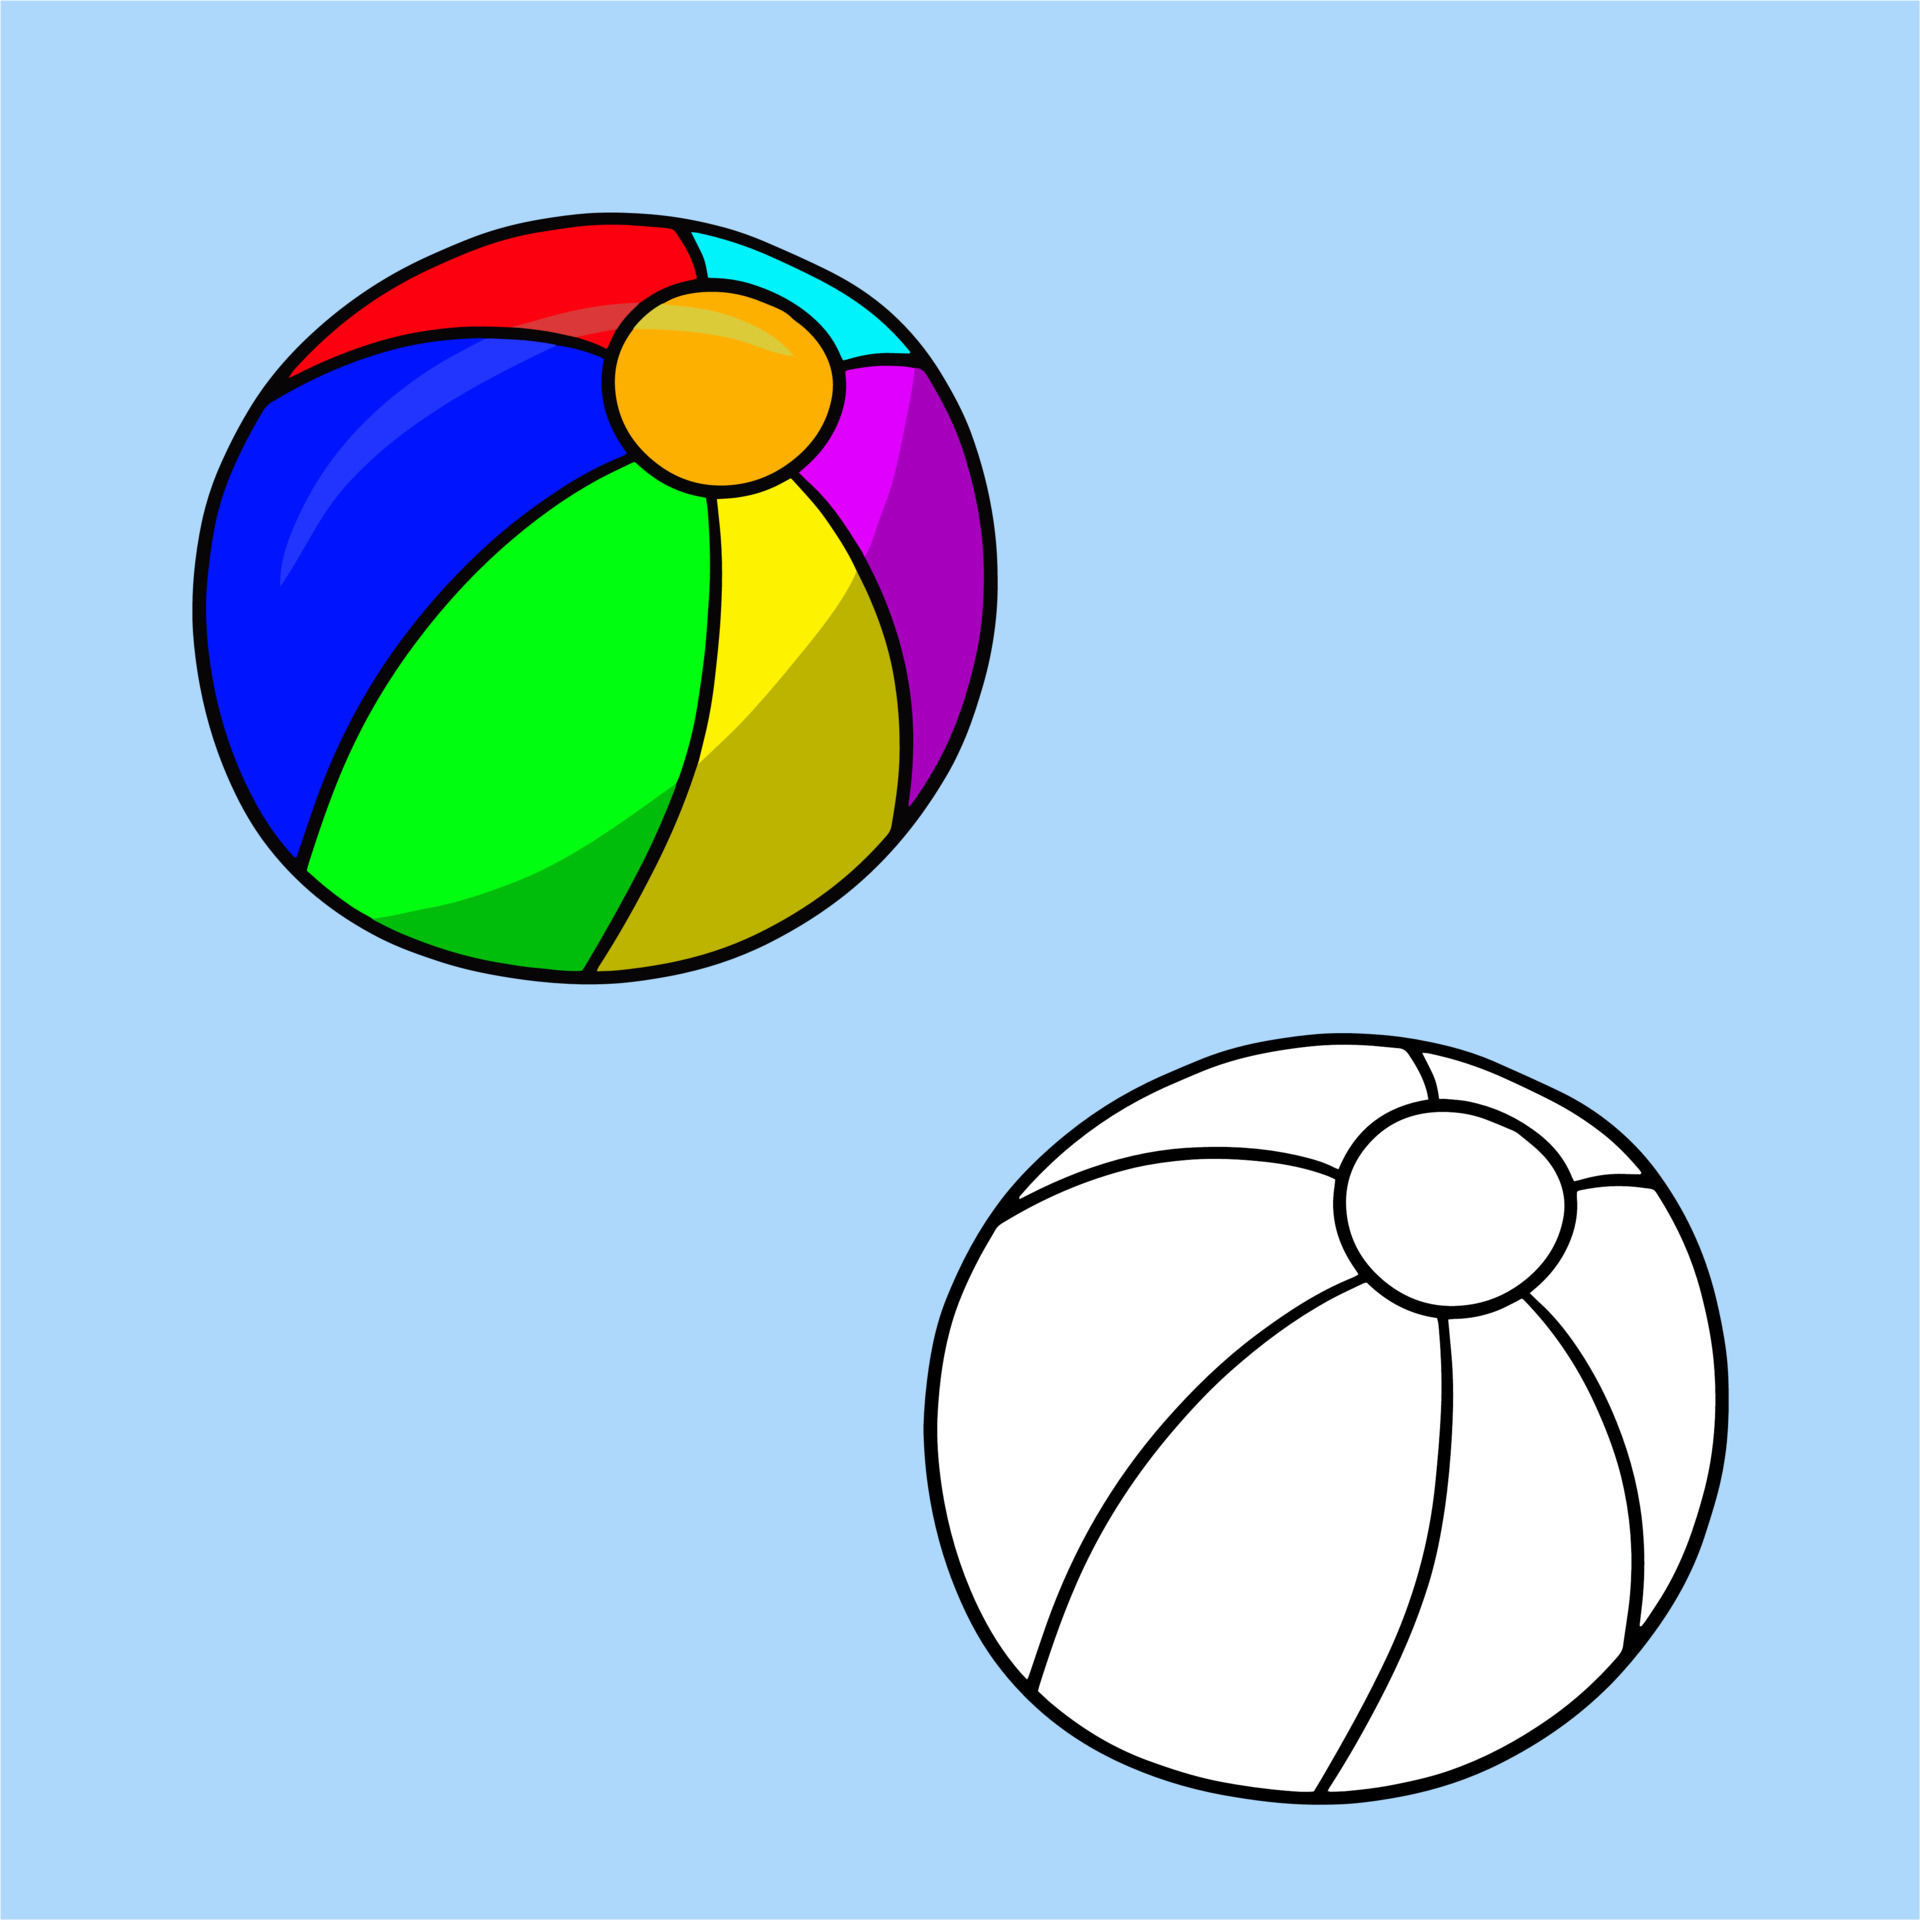 Esfera vermelha do esporte. bola de borracha ou couro de desenho animado  para as crianças brincarem ao ar livre, jogos infantis, ilustração vetorial  plana